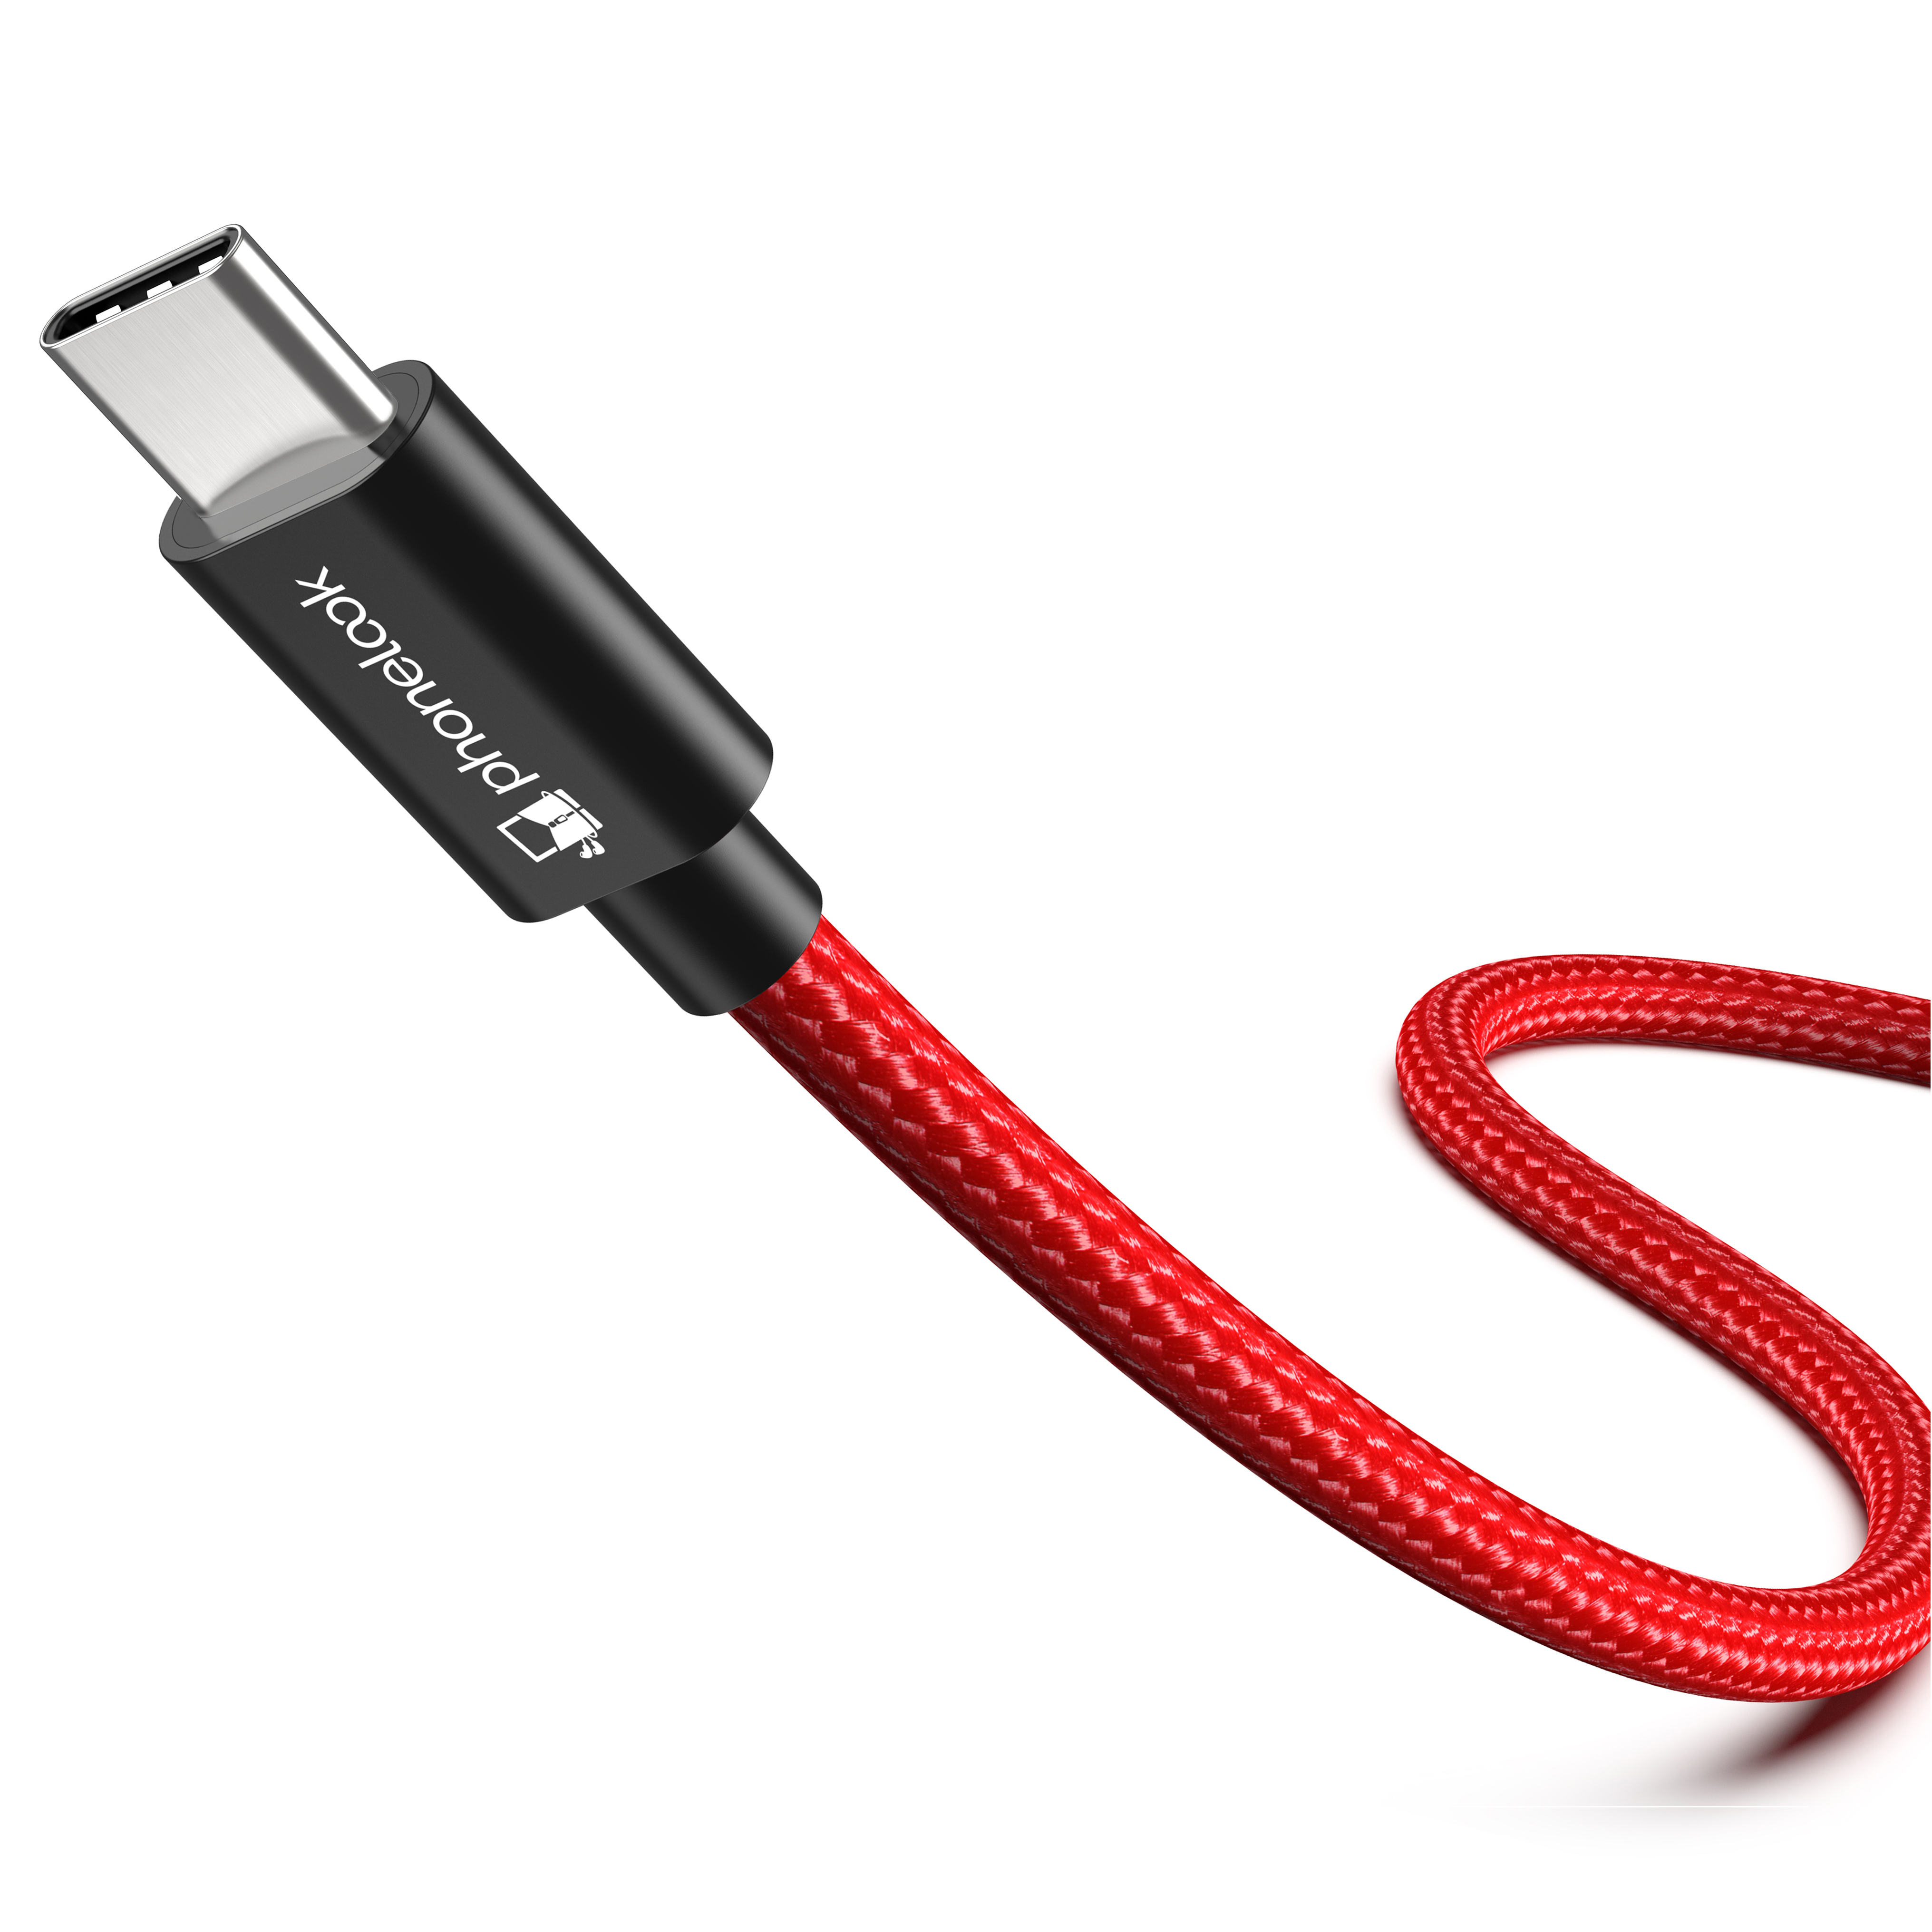 Câble chargeur (1 m) USB-C vers USB-A - PhoneLook noir/rouge - Acheter sur  PhoneLook